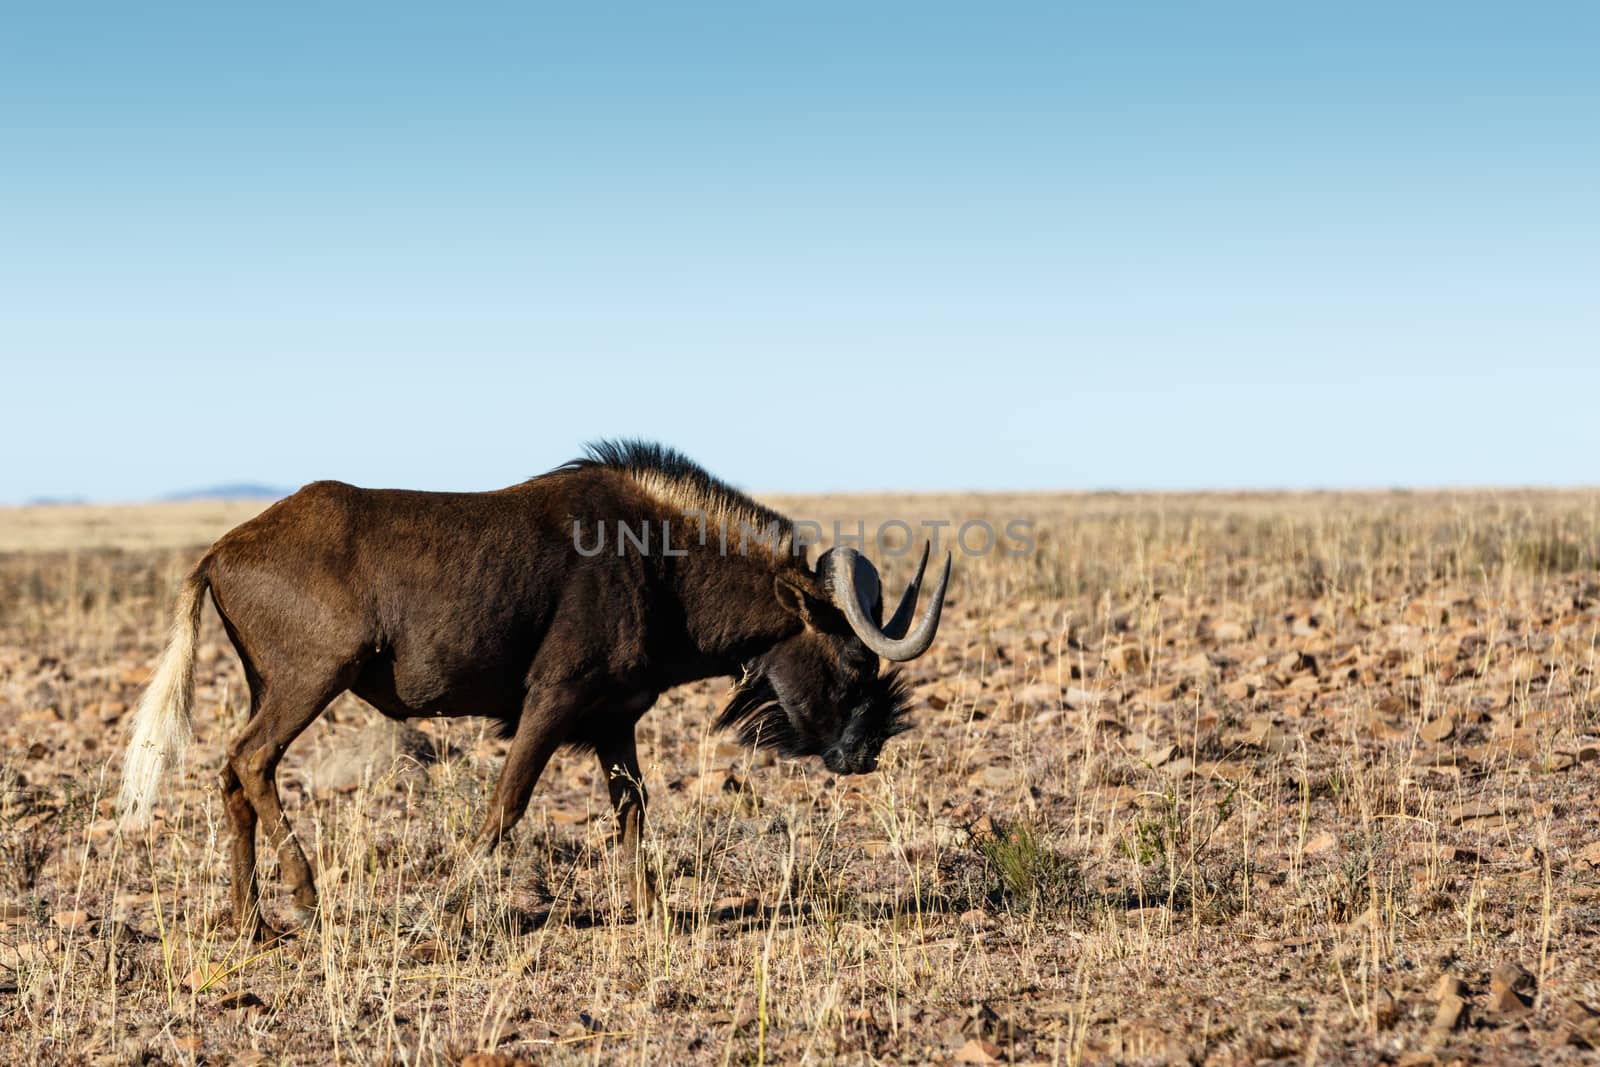 Single Black Wildebeest grazing in the field.